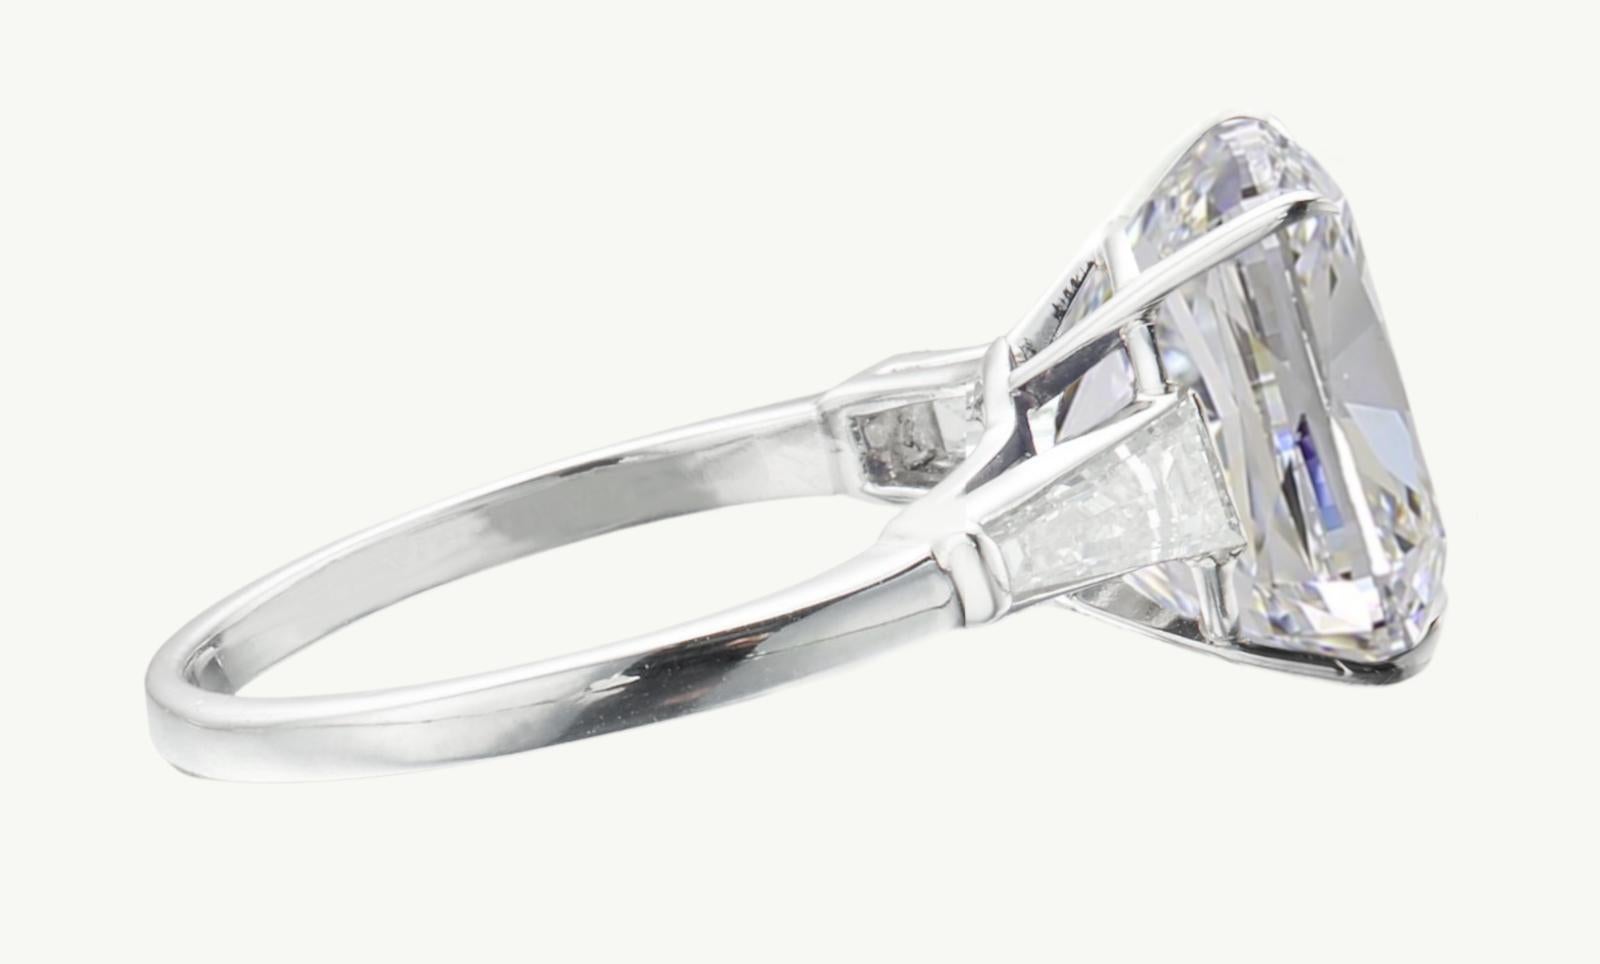 Voici une extraordinaire bague en platine à l'allure intemporelle, ornée d'un magnifique diamant coussin brillant certifié GIA. Le diamant central, d'une taille remarquable de 5 carats, présente des caractéristiques impeccables : Couleur E, pureté